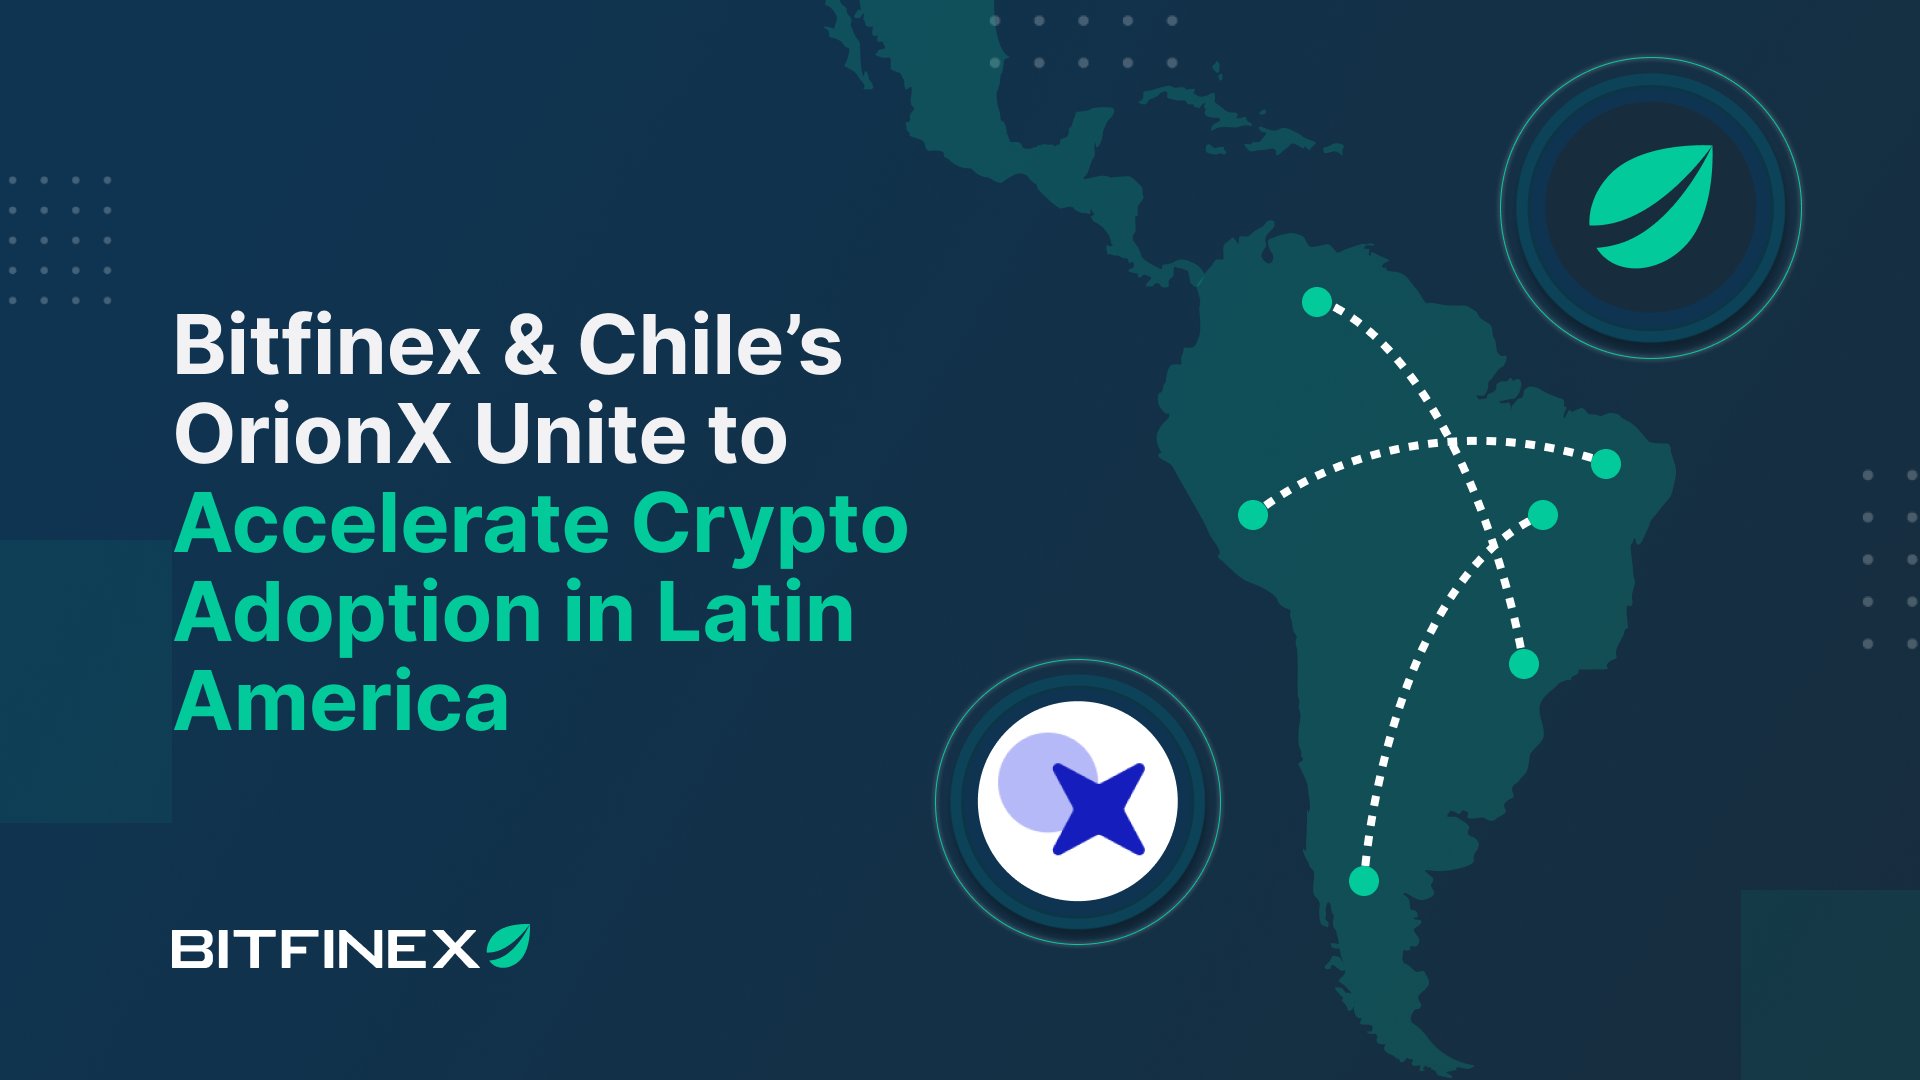 Bitfinex étend son influence en Amérique latine et investit sur OrionX